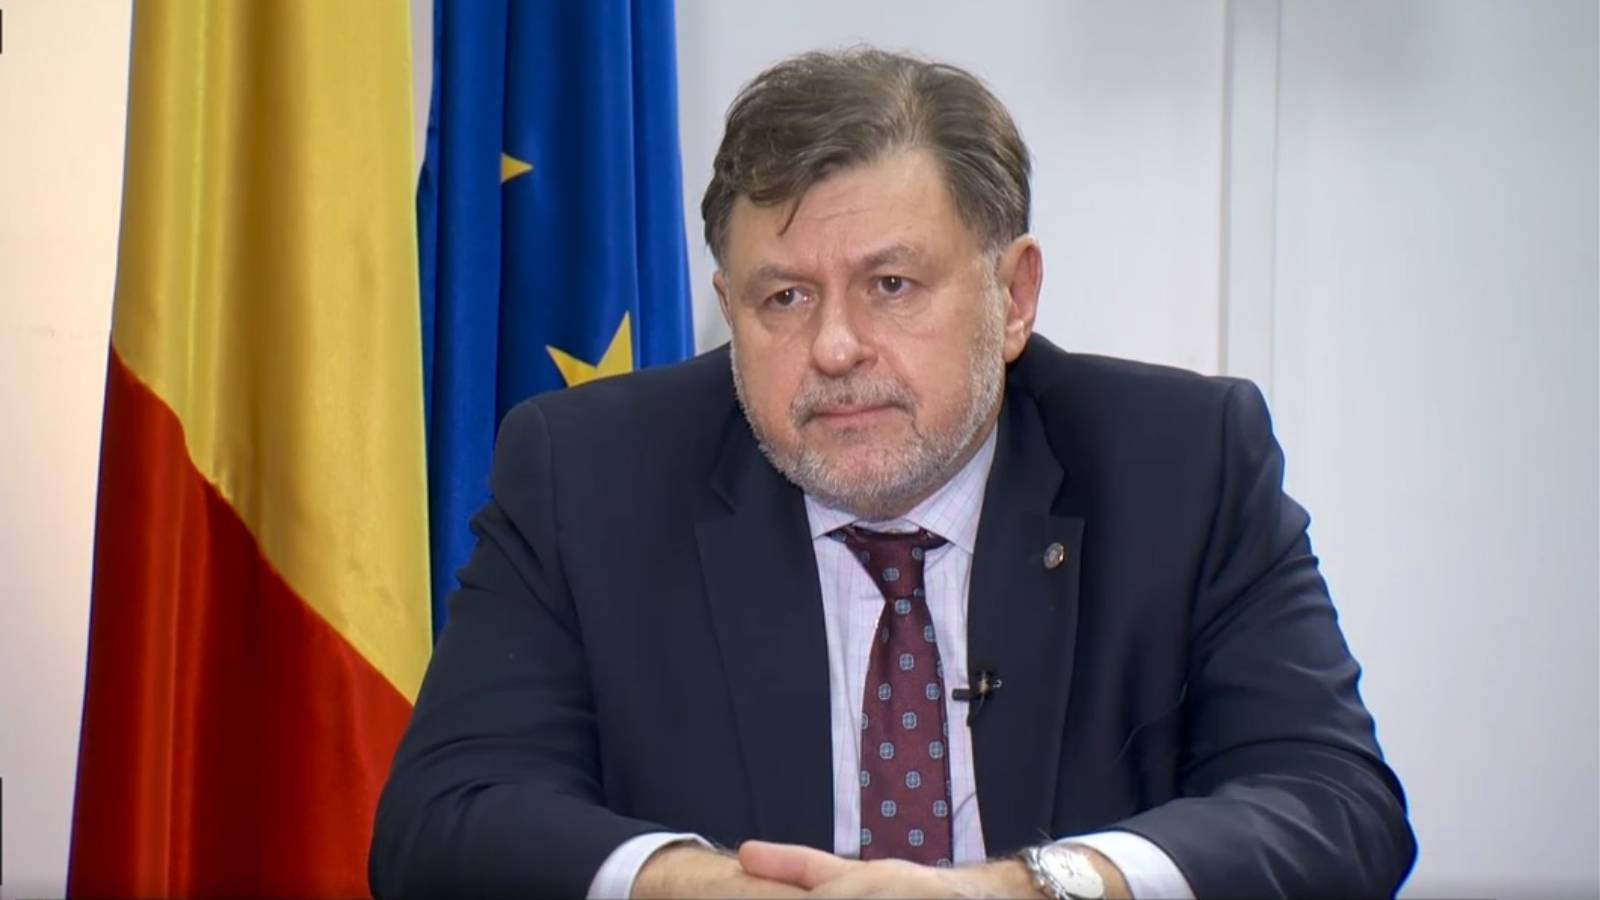 Sundhedsminister Bekendtgørelse SIDSTE MINUTE Vigtige foranstaltninger annonceret rumænere